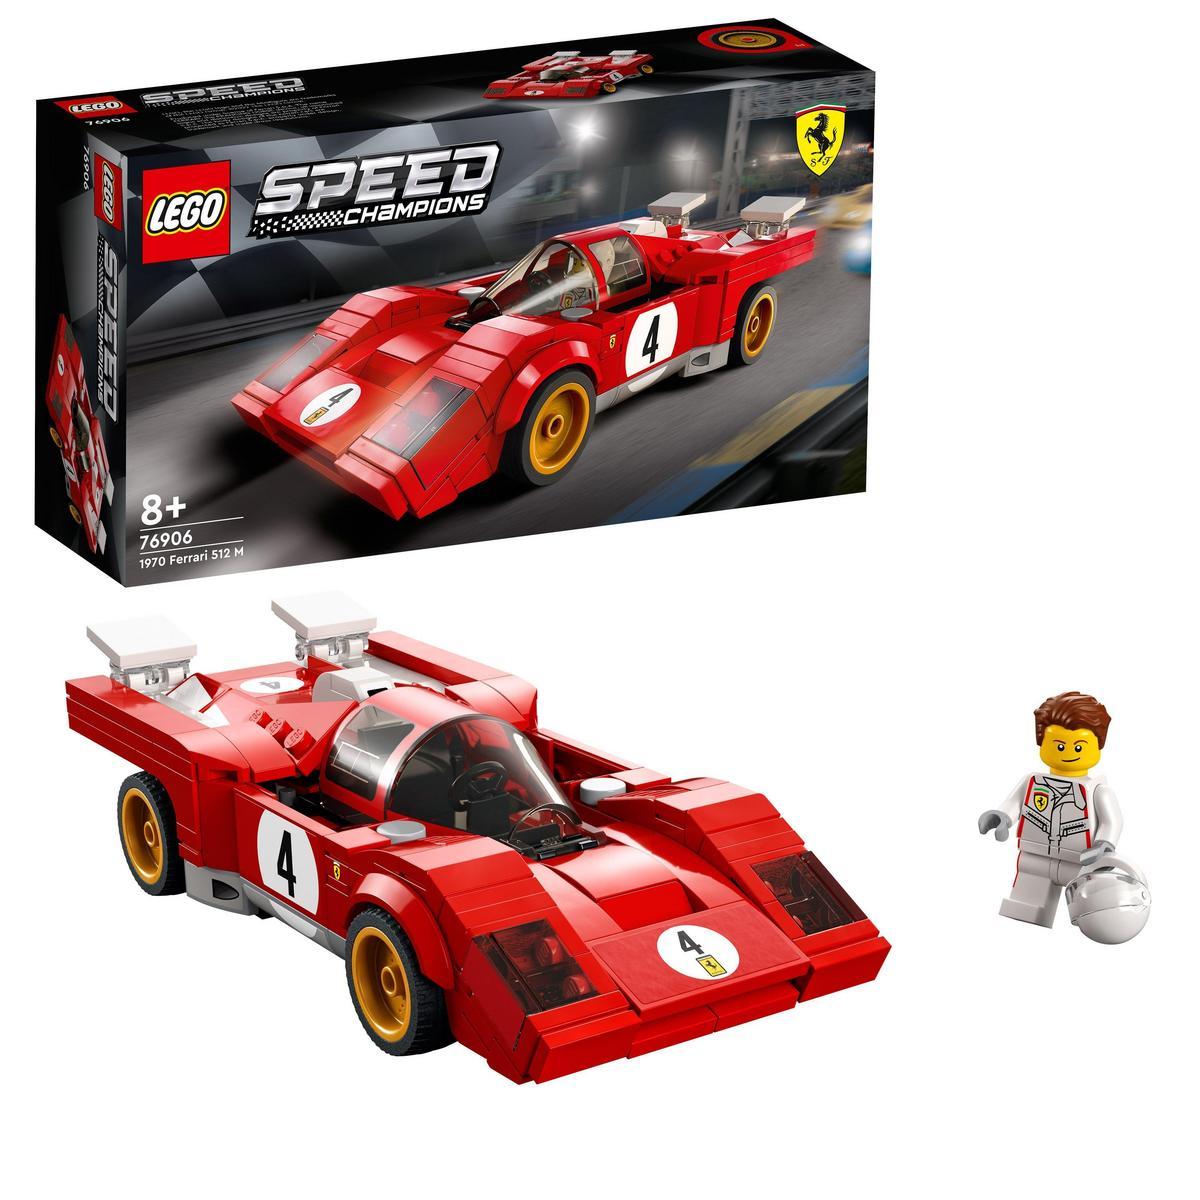 LEGO - Kit de construcción LEGO® Speed Champions 76906 1970 Ferrari 512 M; impresionante modelo de un coche de carreras para niños a partir de 8 años; mejor juguete para niños (291 piezas)